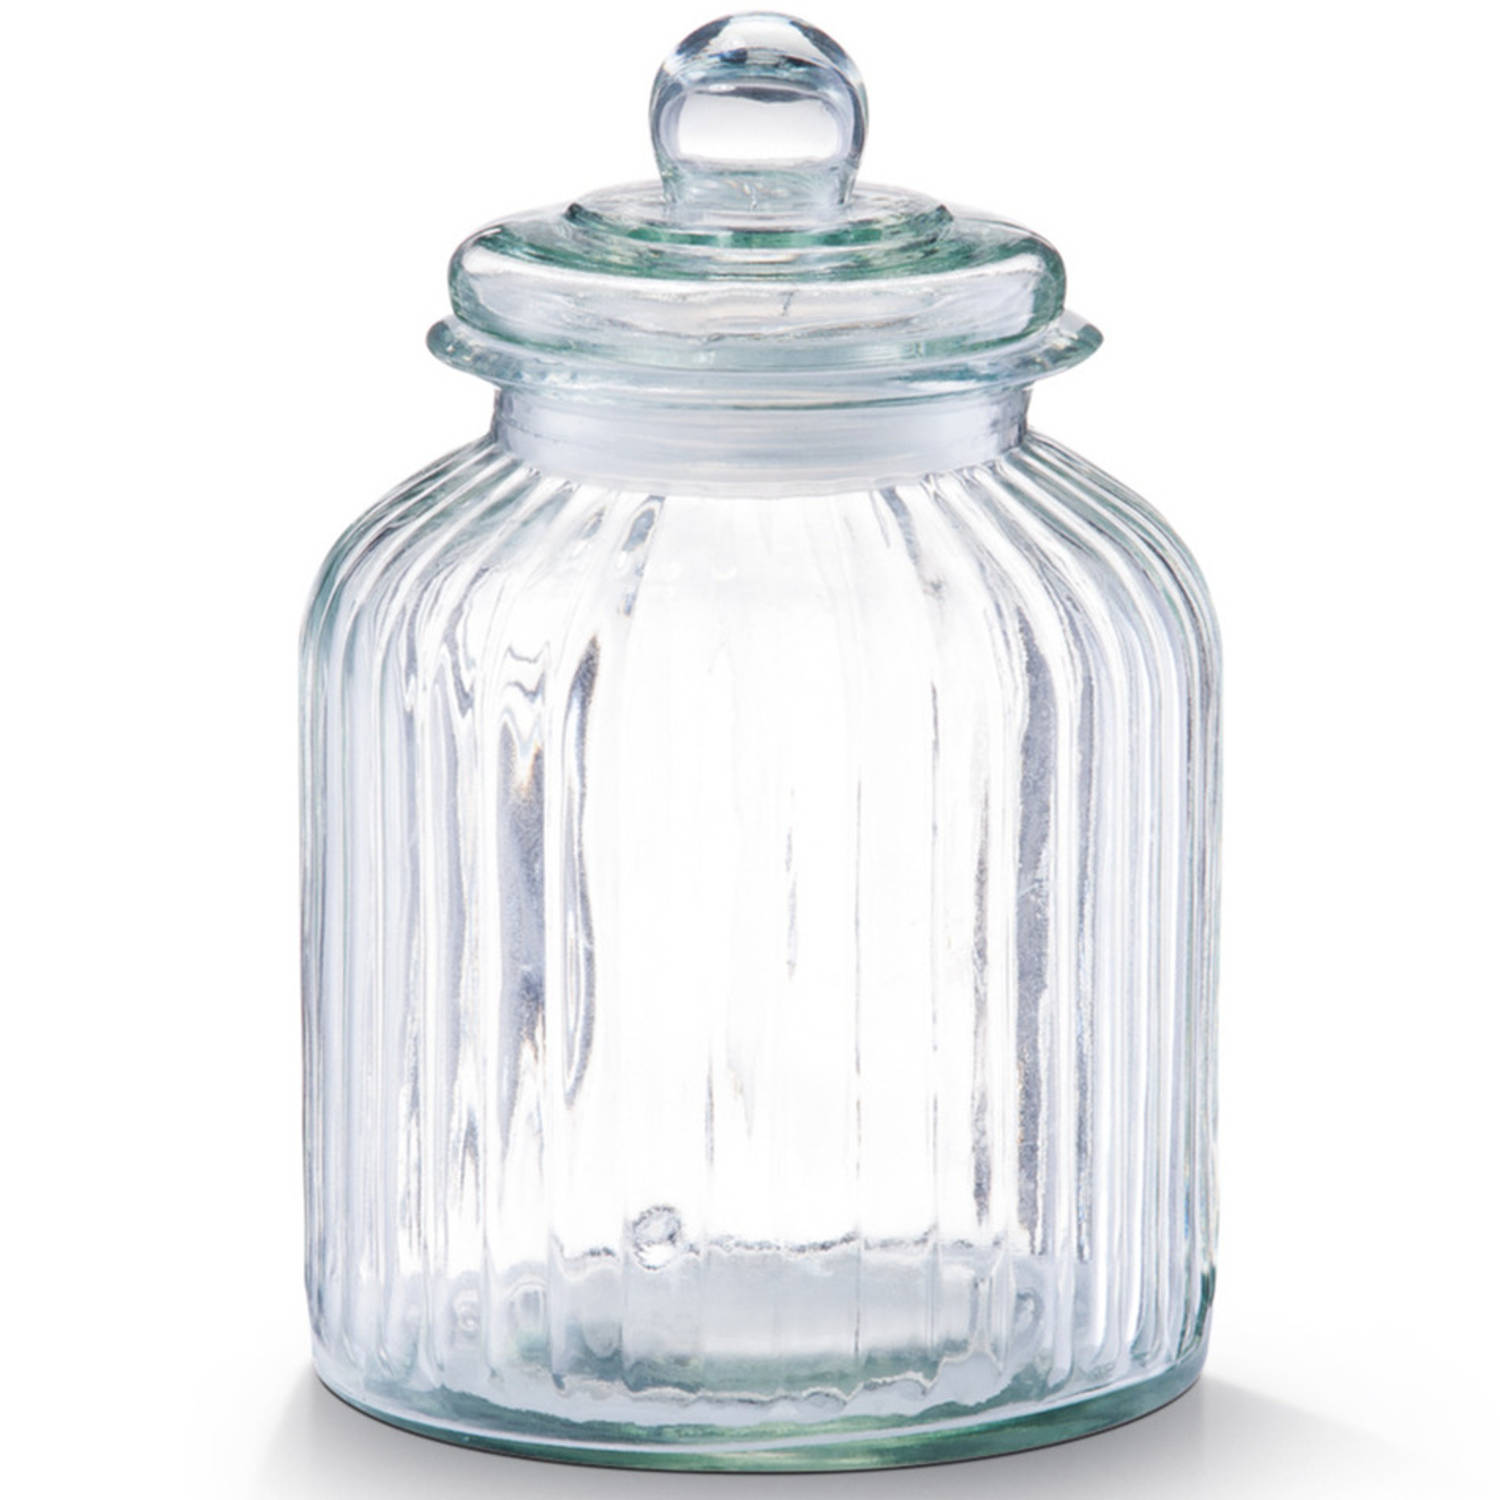 Glazen voorraadpot/koekjespot rond met deksel 3800 ml - 17,5 x 26 cm - Snoeppot - Bewaarpot